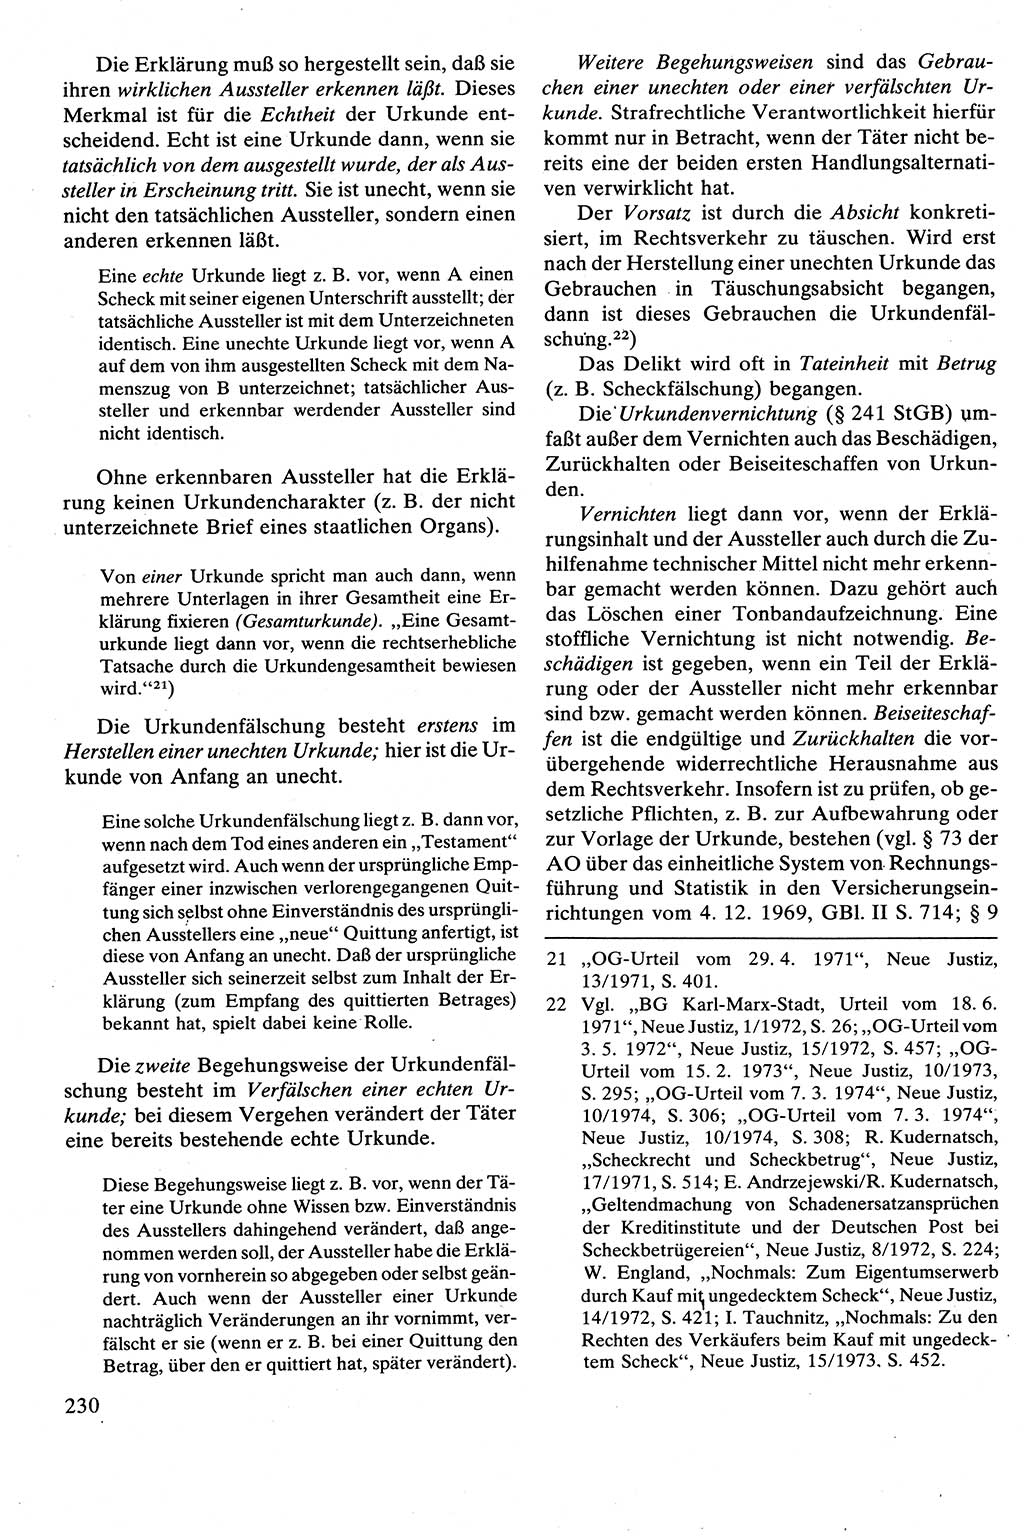 Strafrecht [Deutsche Demokratische Republik (DDR)], Besonderer Teil, Lehrbuch 1981, Seite 230 (Strafr. DDR BT Lb. 1981, S. 230)